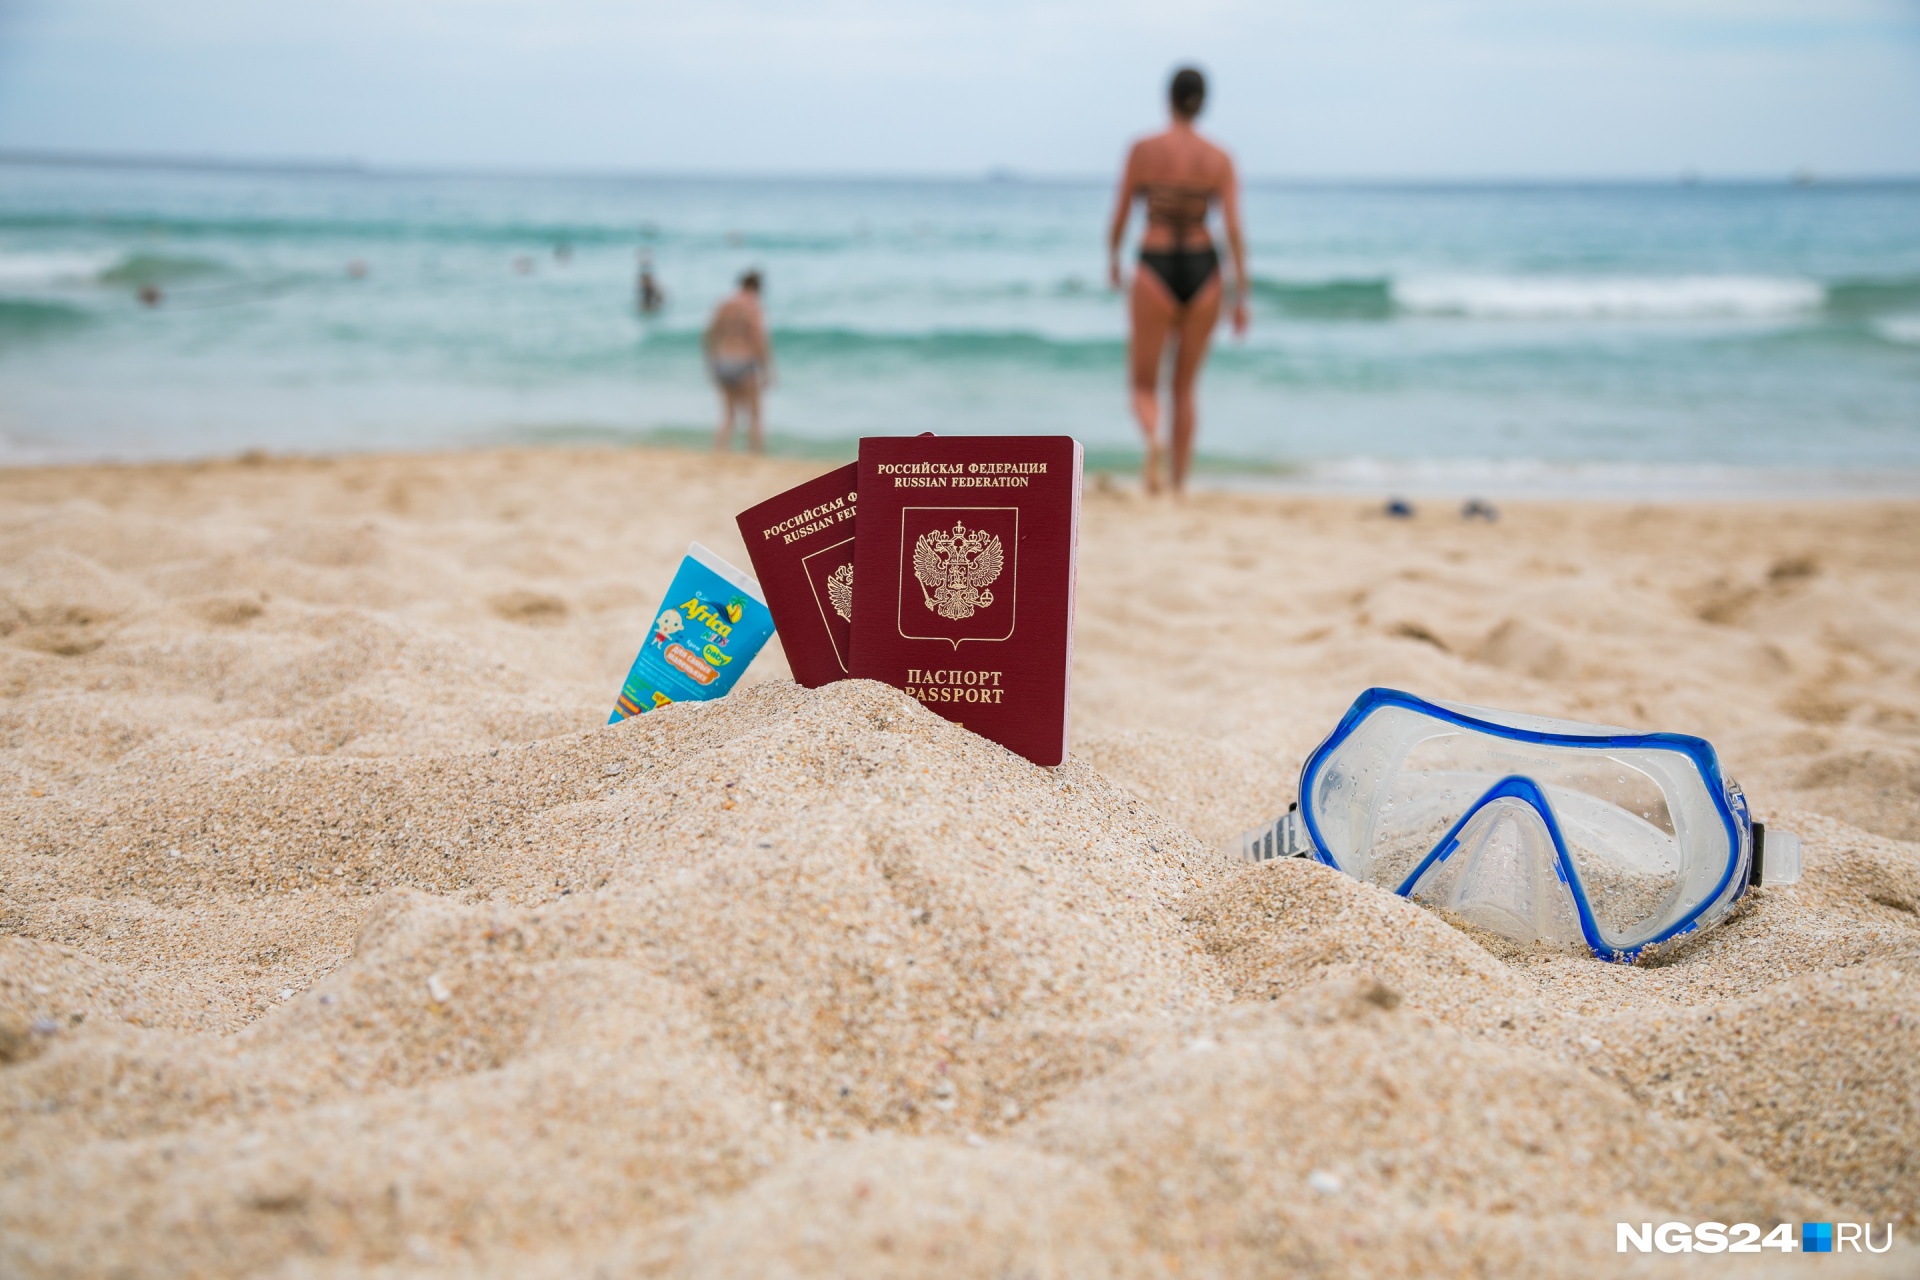 Отдых за границей в этом году будет дороже, чем в России. Но и внутри страны отпуск не будет дешевым